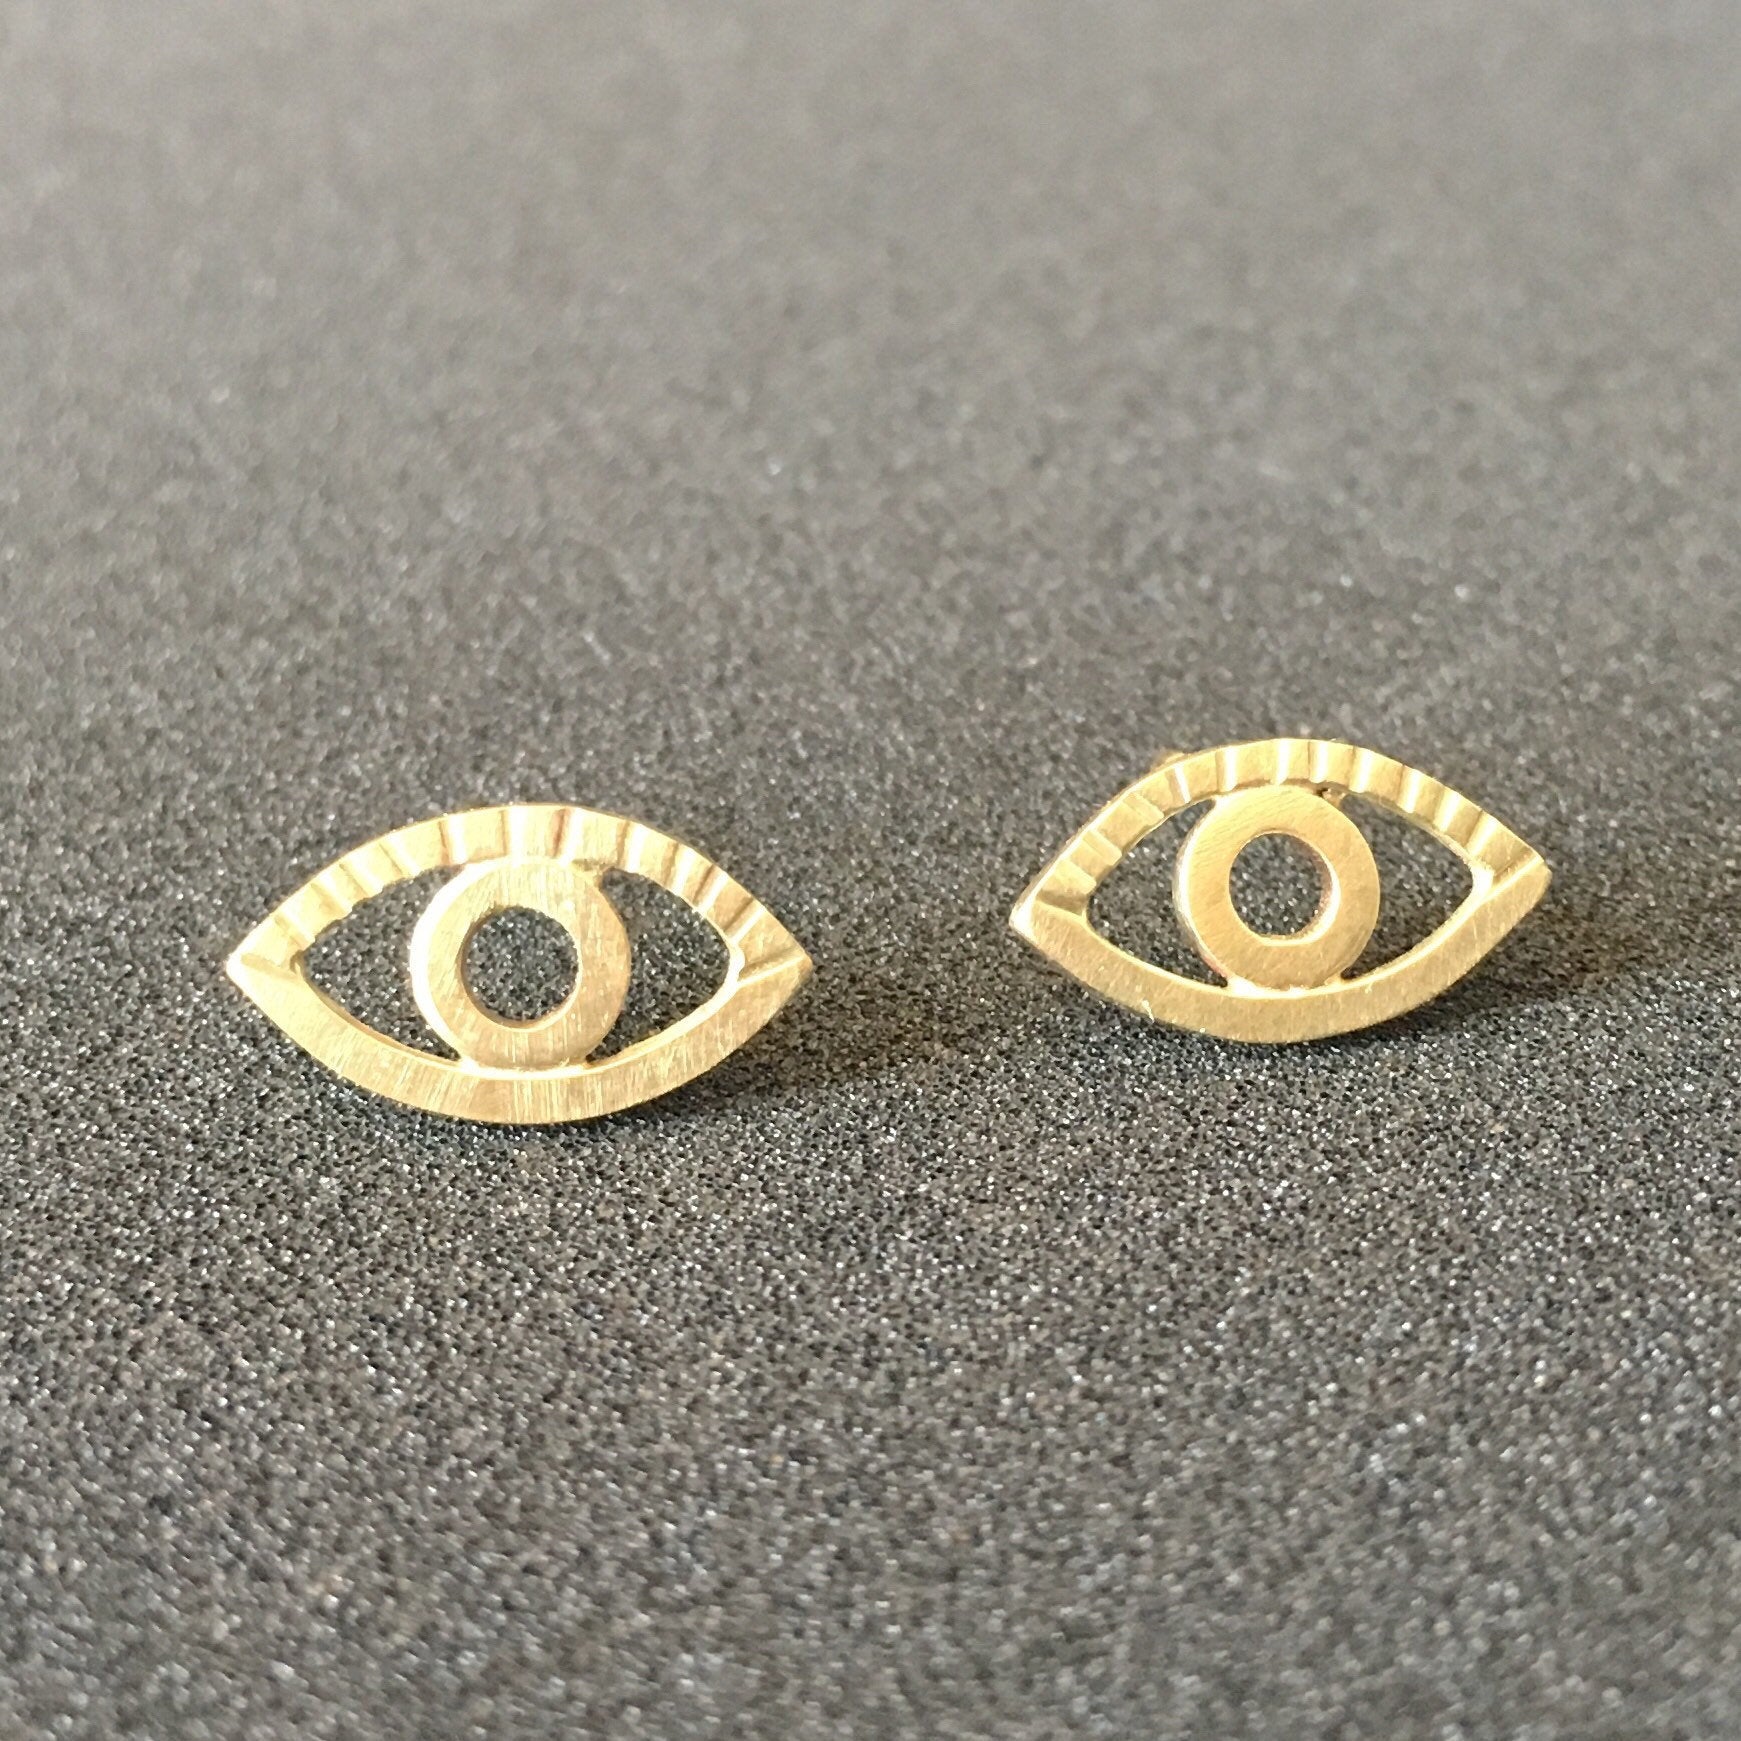 18K Gold Eye Stud Earrings